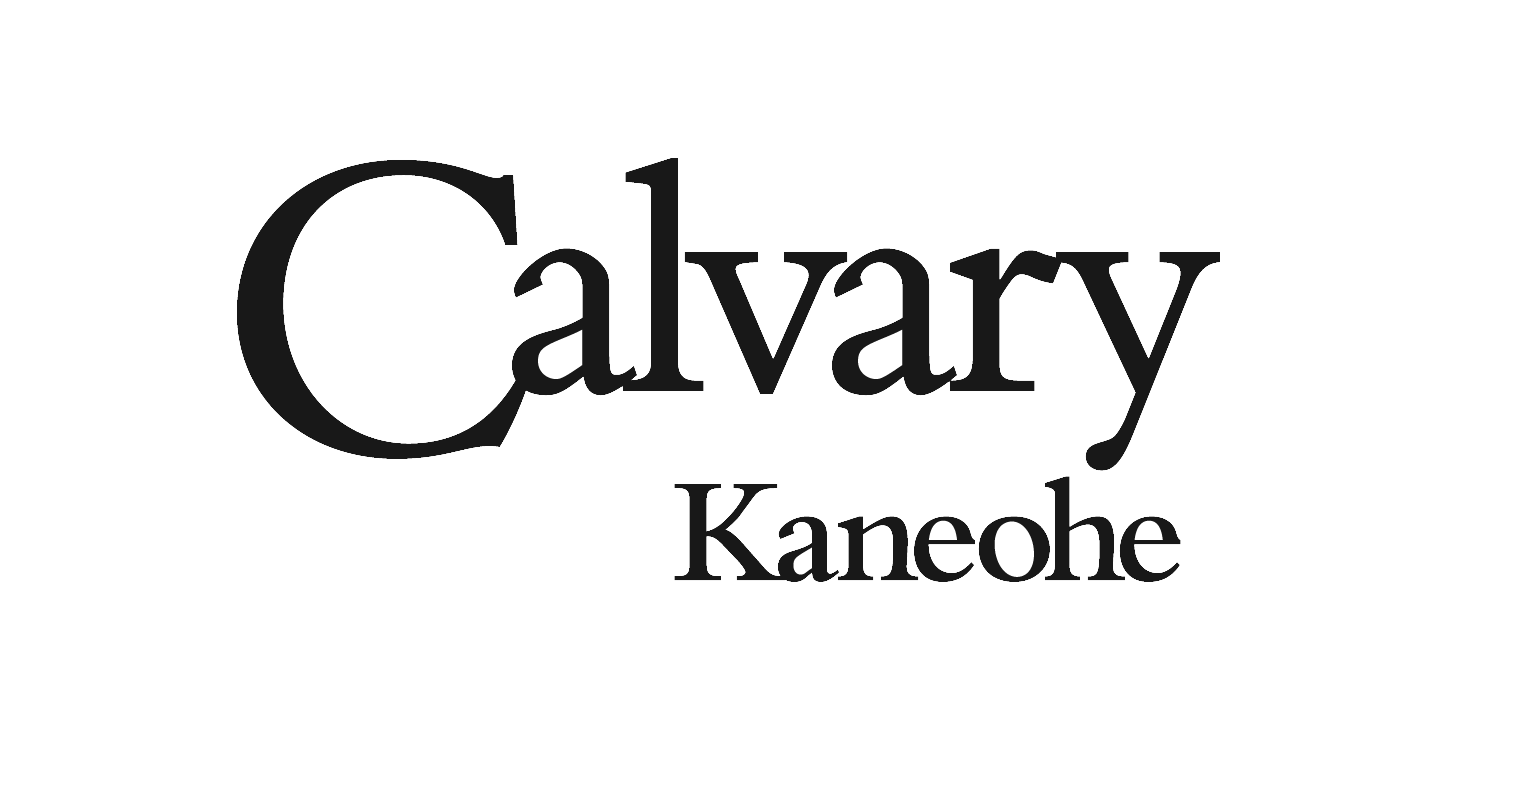 Calvary Kaneohe logo